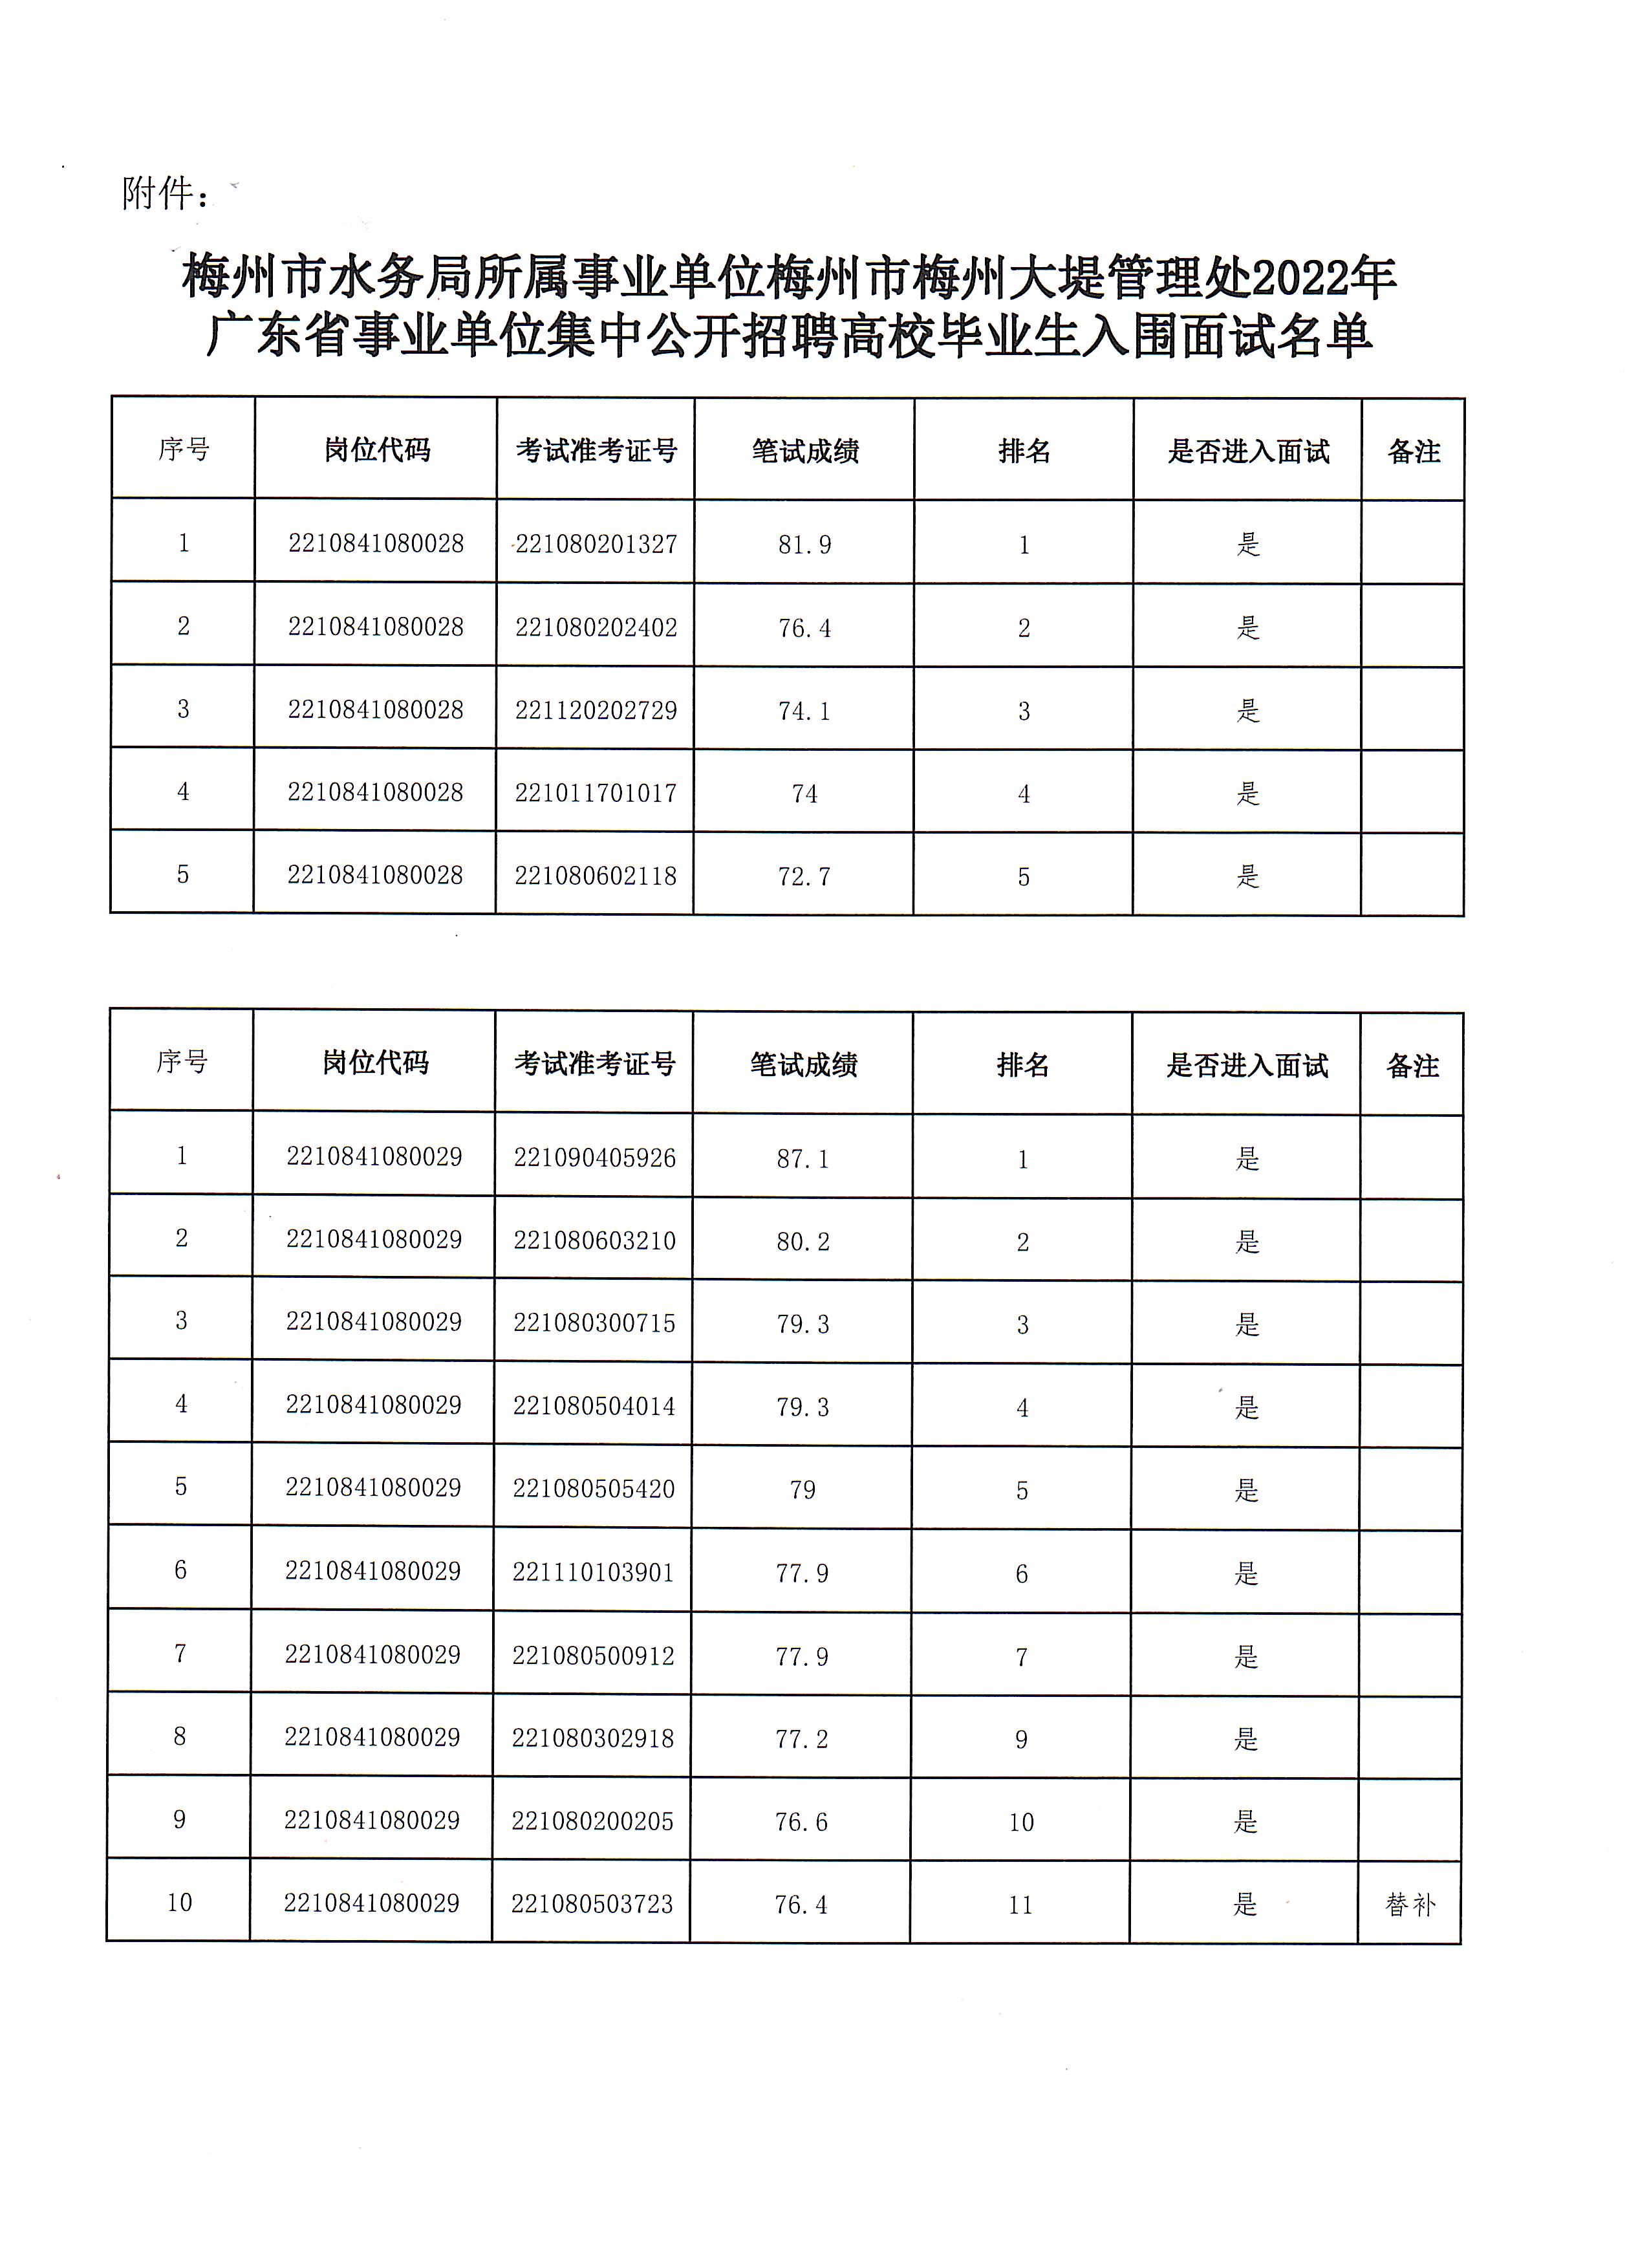 附件：梅州市梅州大堤管理处2022年广东省事业单位集中公开招聘高校毕业生入围面试名单.jpg